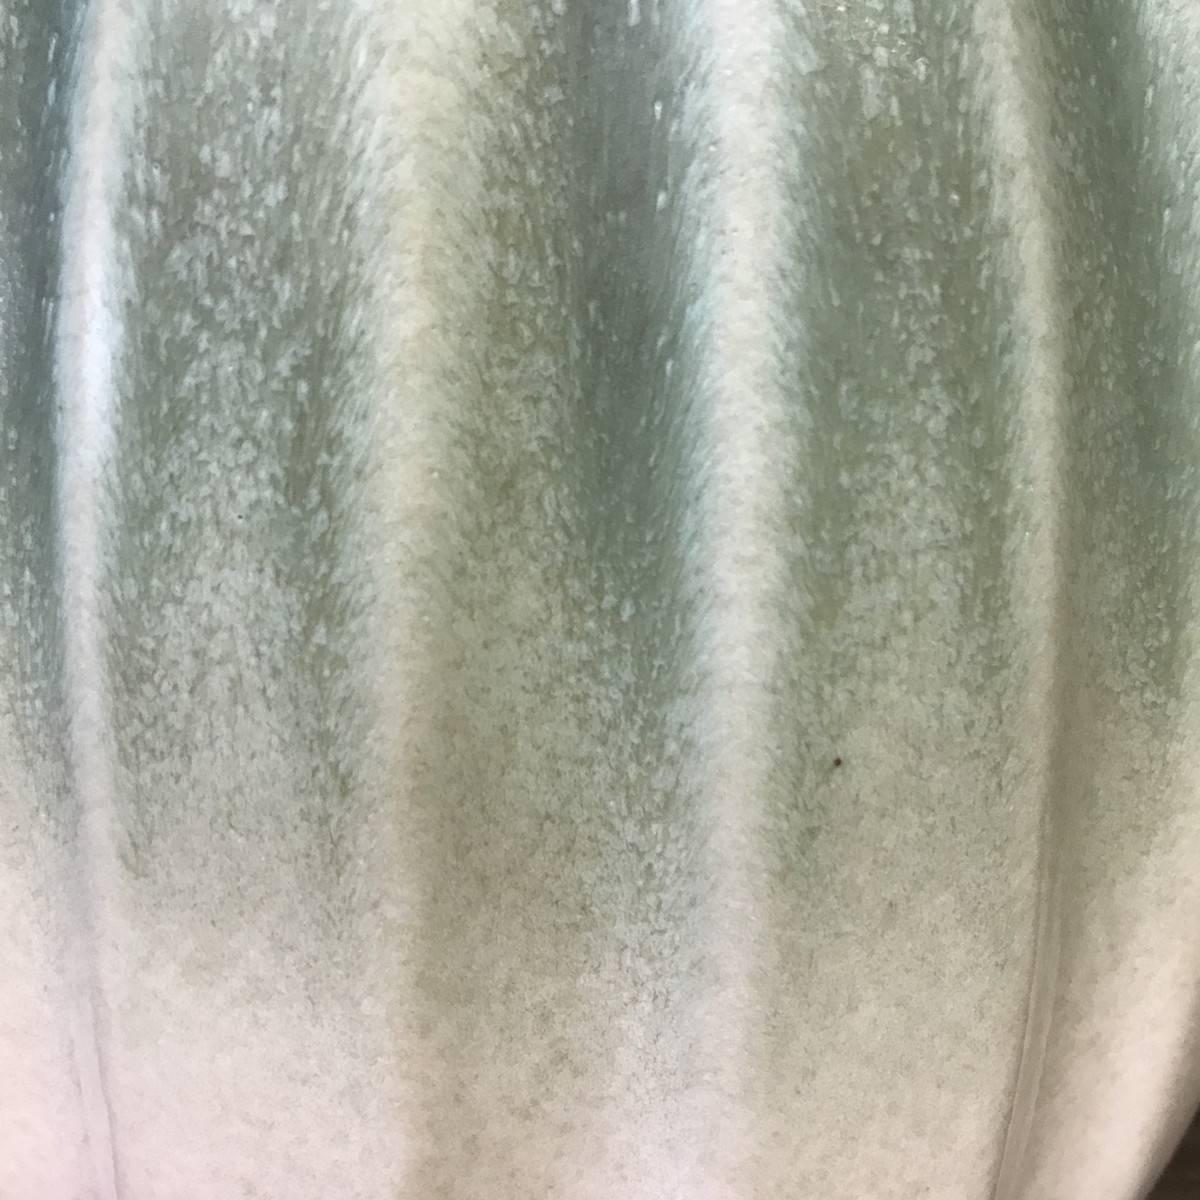 Melon shaped design vase.
Ombre glaze of pale sea foam and cream.